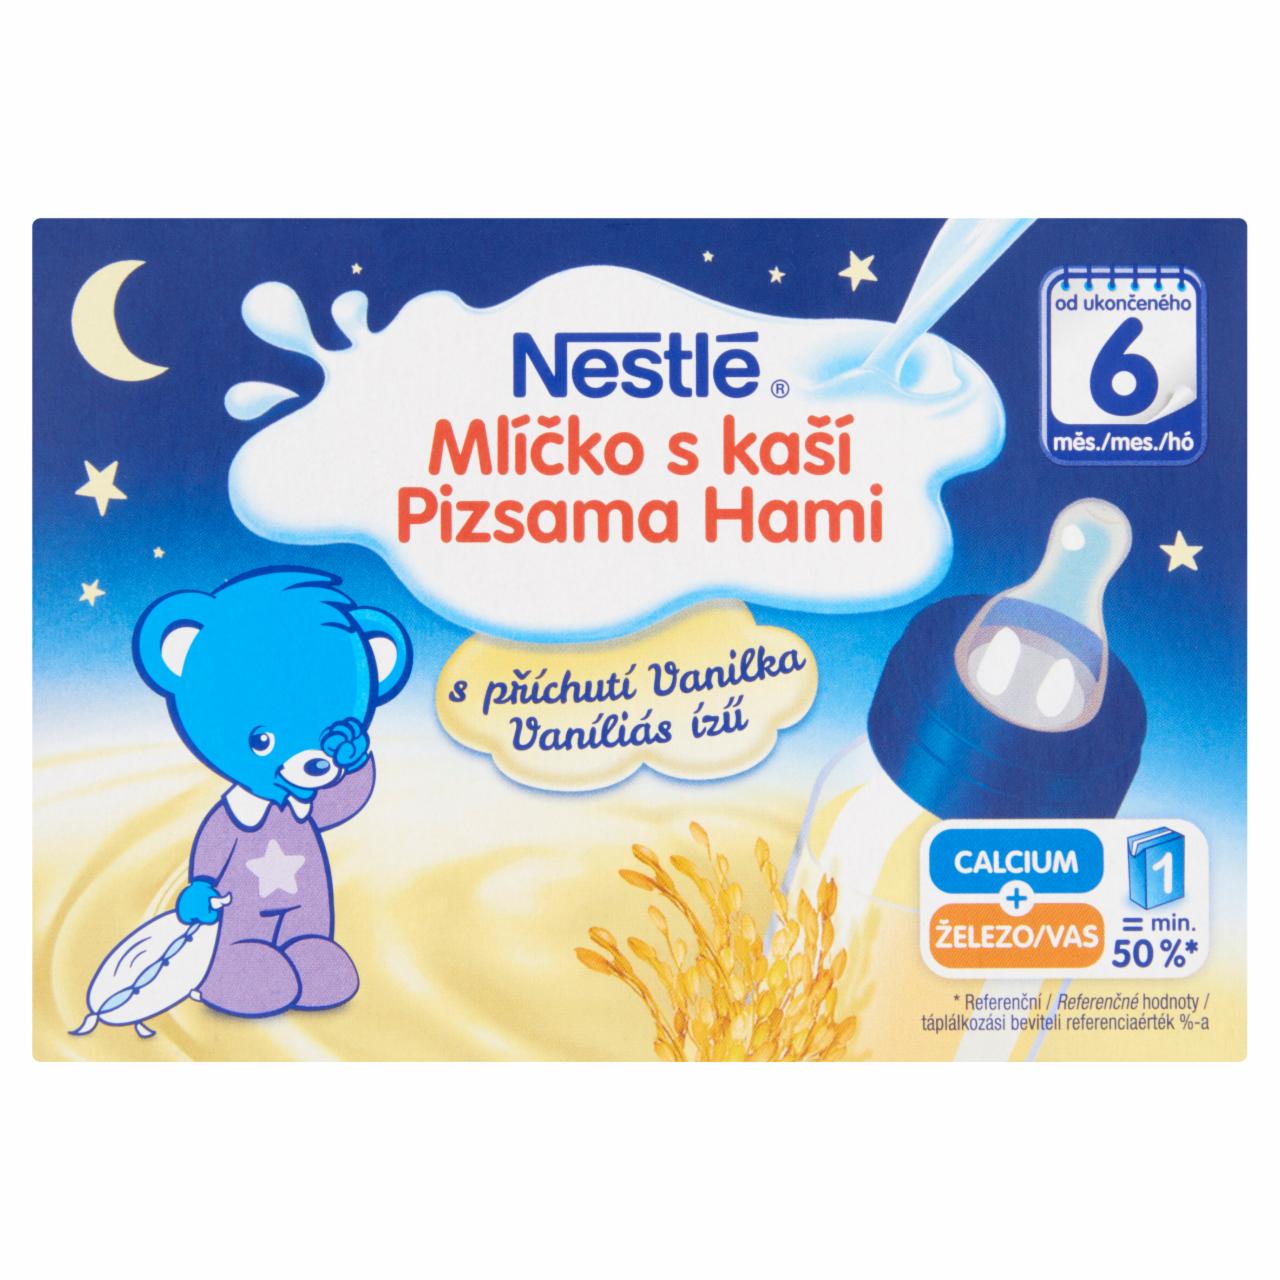 Képek - Nestlé Pizsama Hami vaníliás ízű gluténmentes folyékony gabonás bébiétel 6 hónapos kortól 400 ml